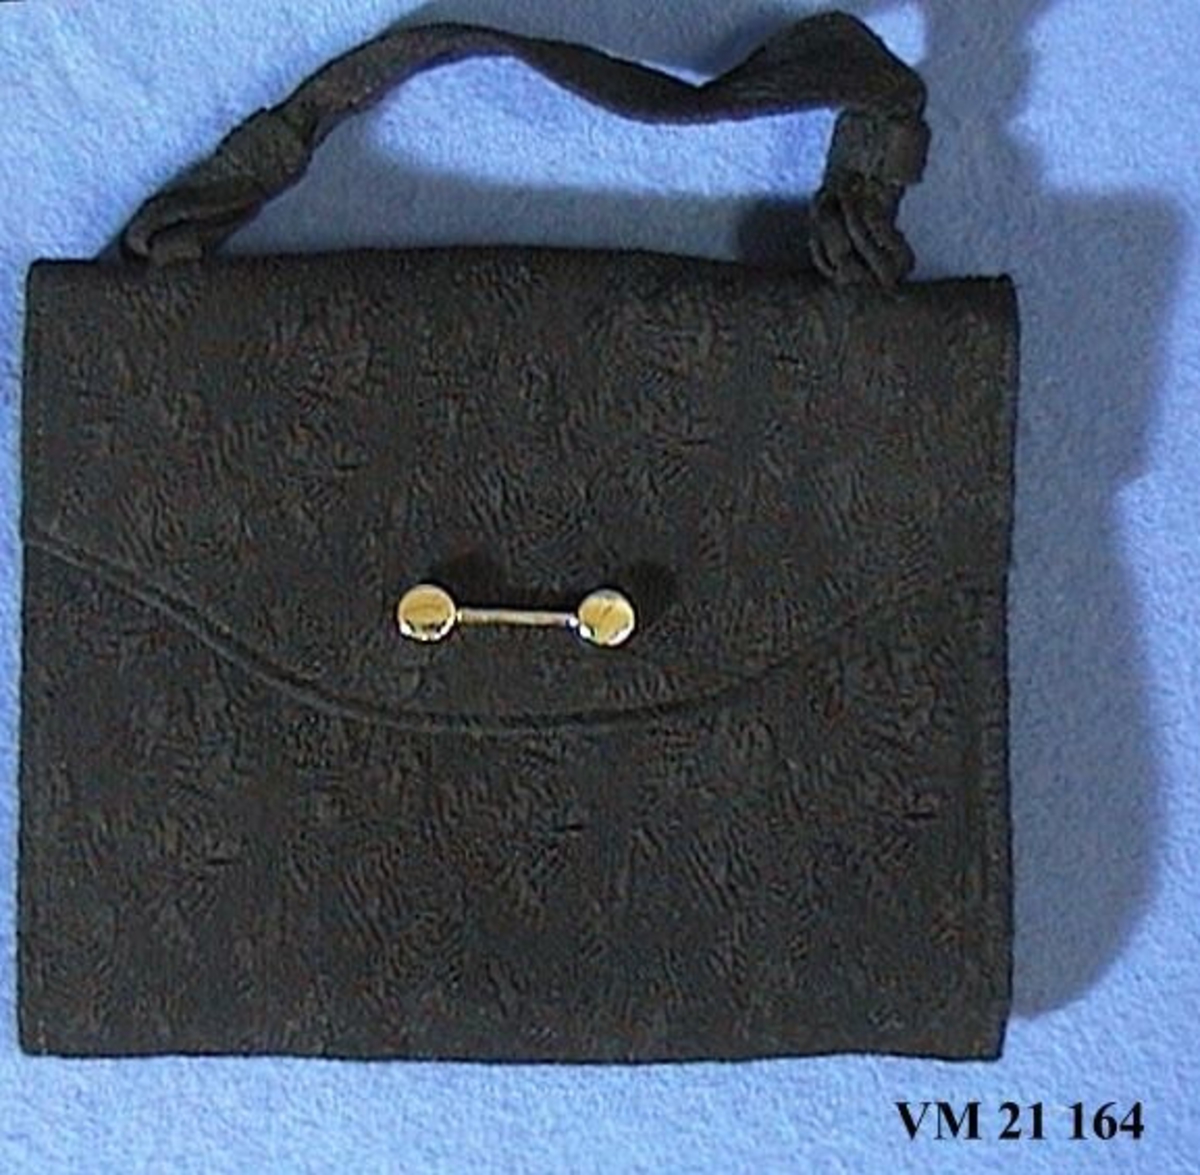 Svart aftonväska med lås i vitmetall. Väskan bäres i ett kort band. Väskans svarta tyg har ett invänt blommönster.